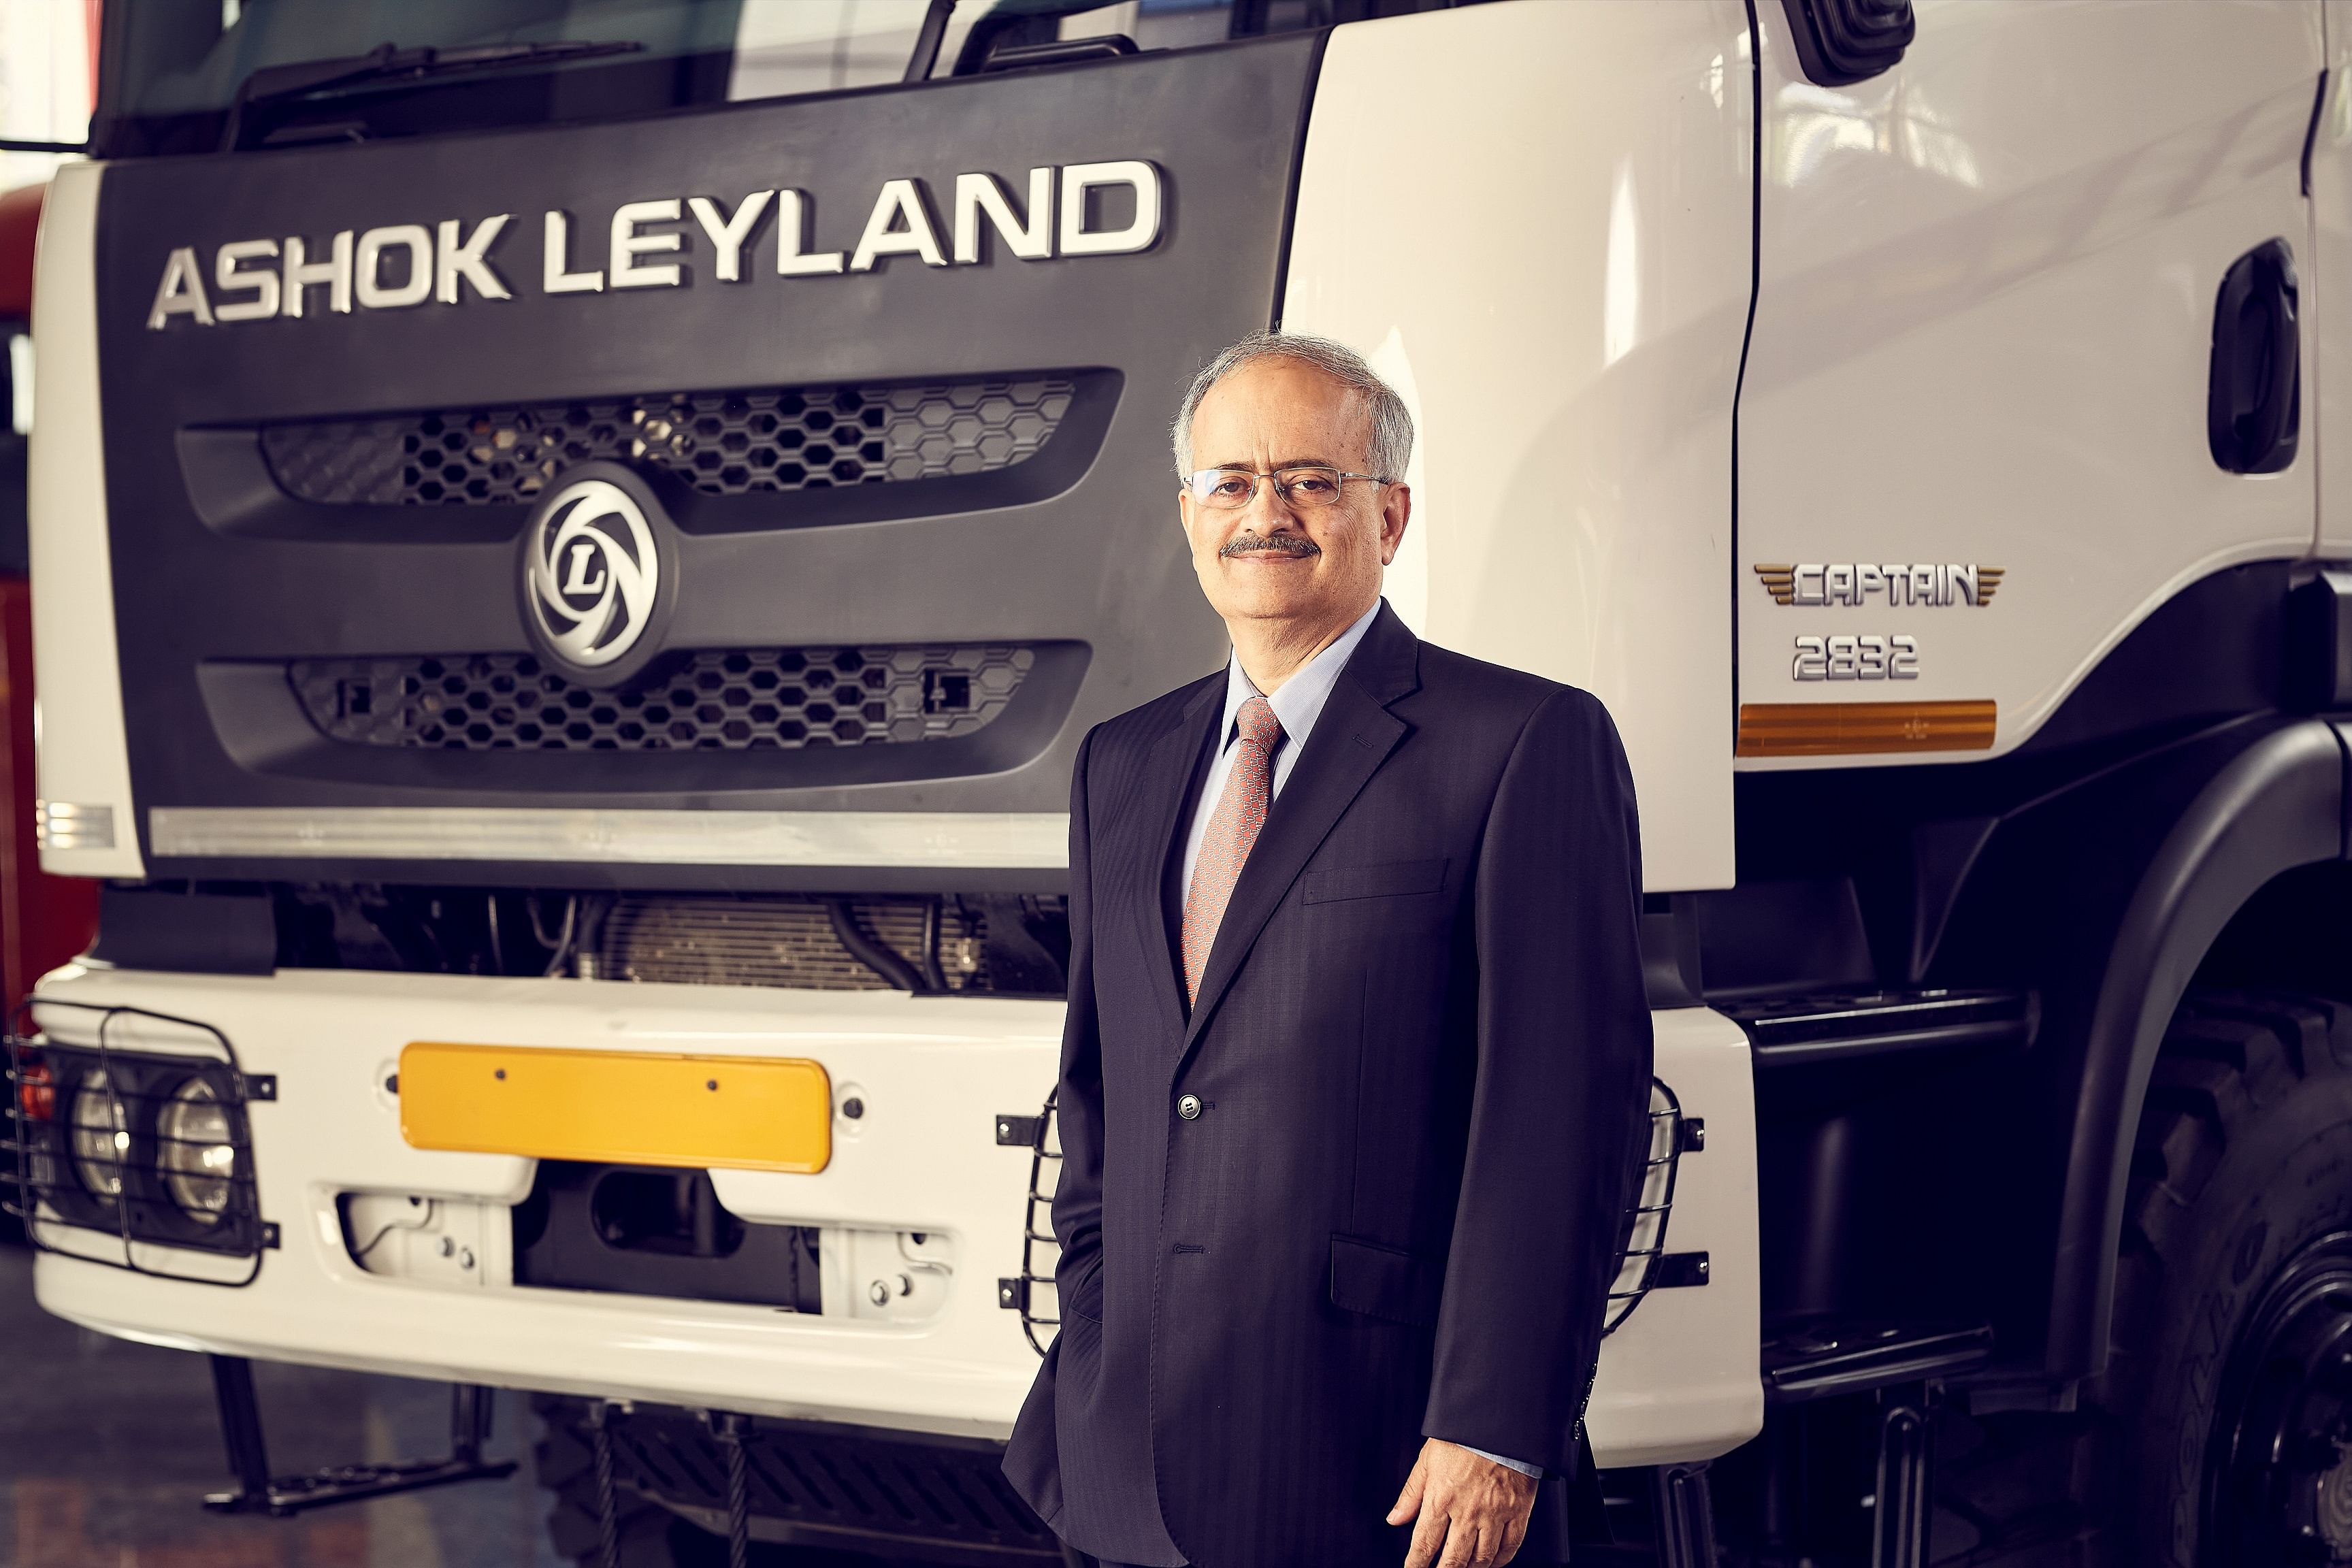 Ashok Leyland Managing Director and CEO Vipin Sondhi